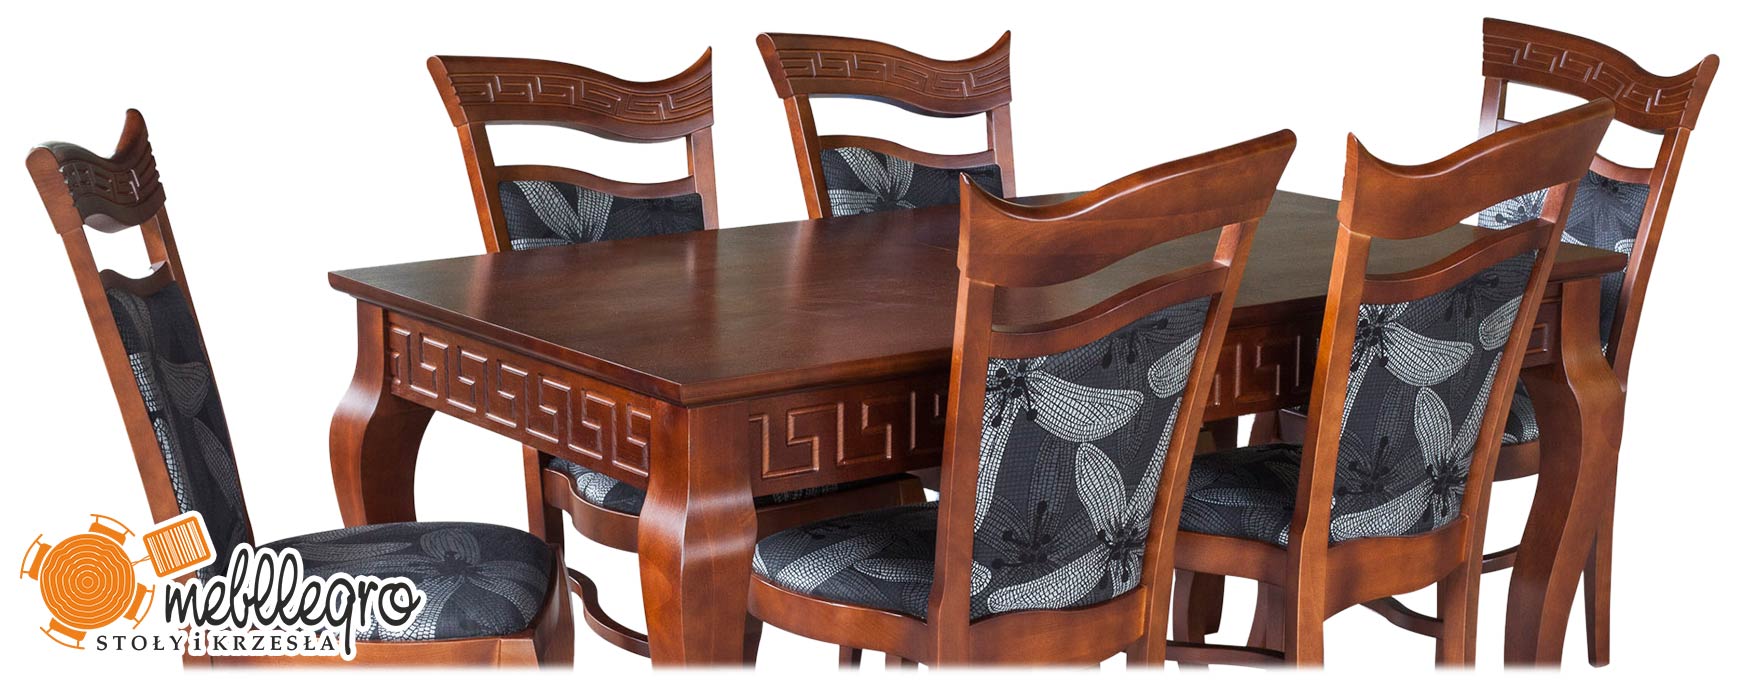 Stylowy stół drewniany z krzesłami tapicerowanymi